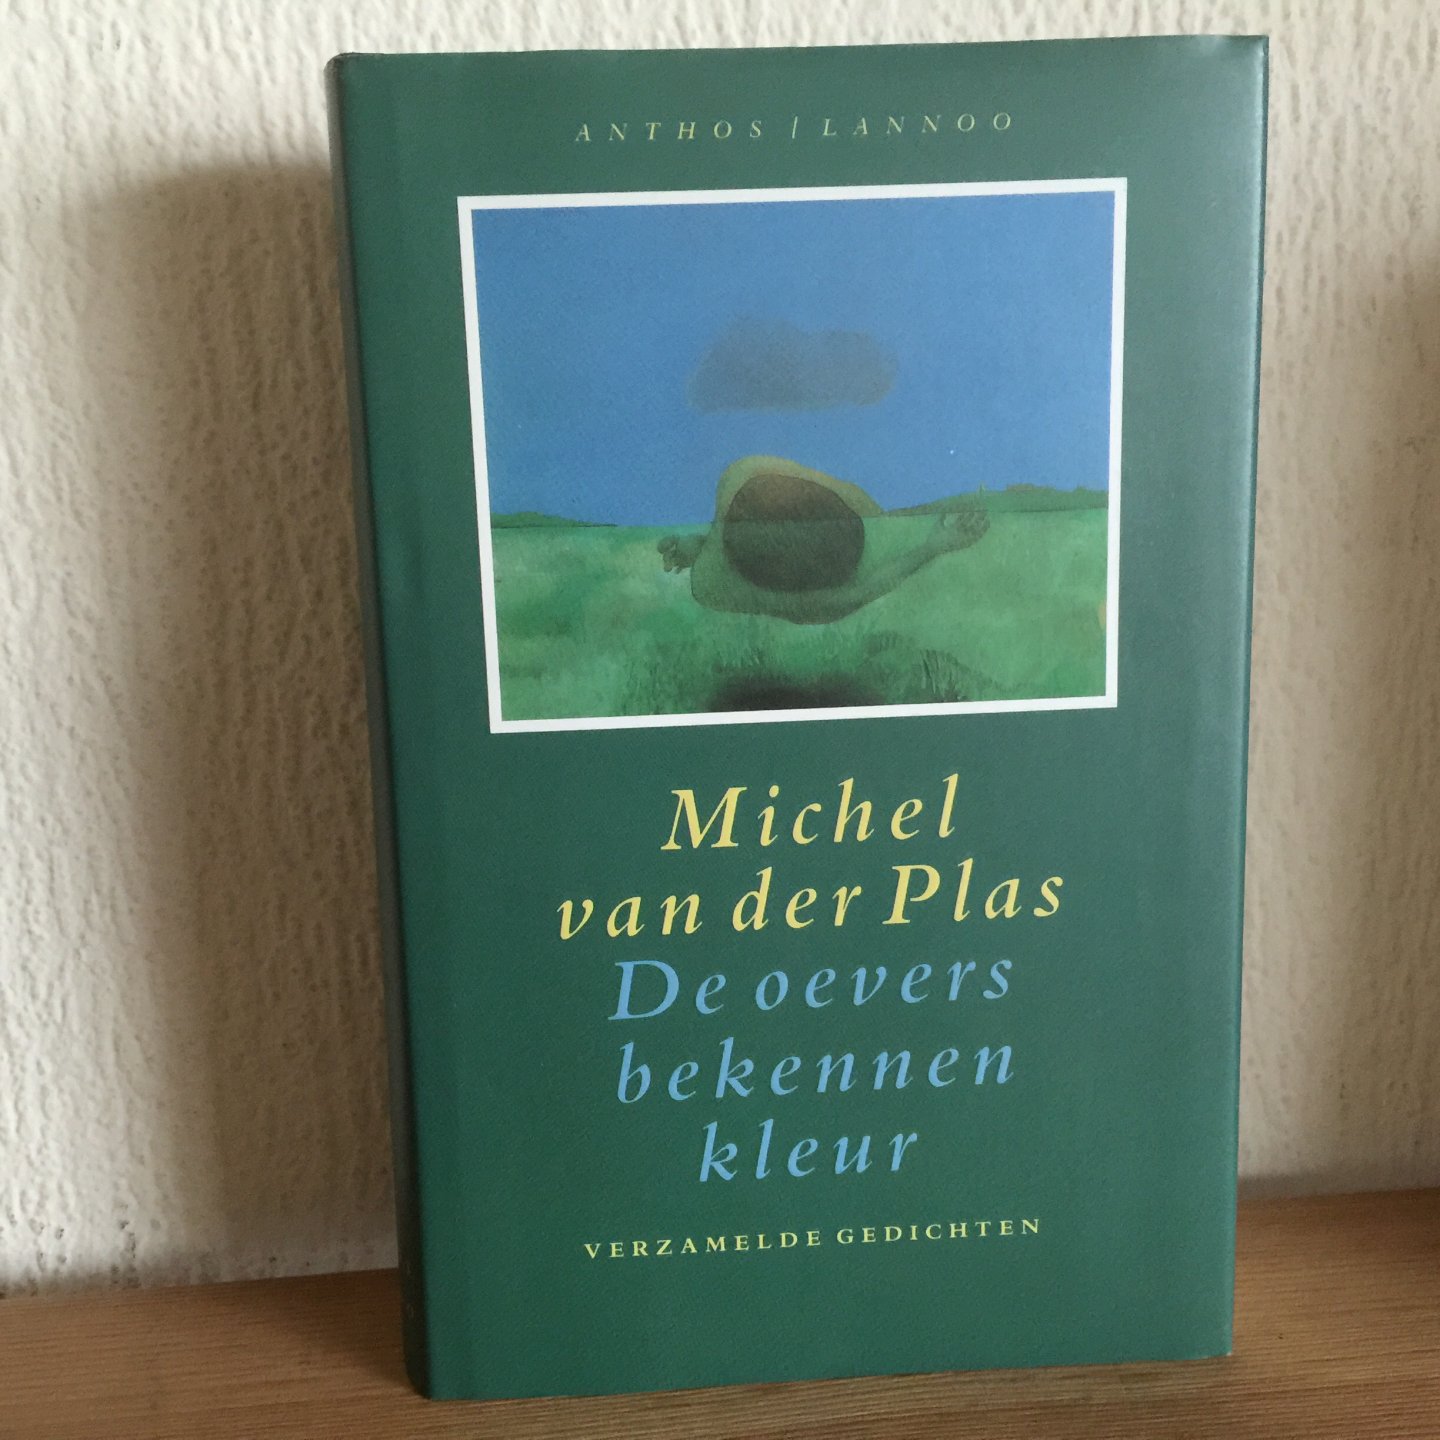 Michel van der Plas - De oevers bekennen kleur ,VERZAMELDE GEDICHTEN